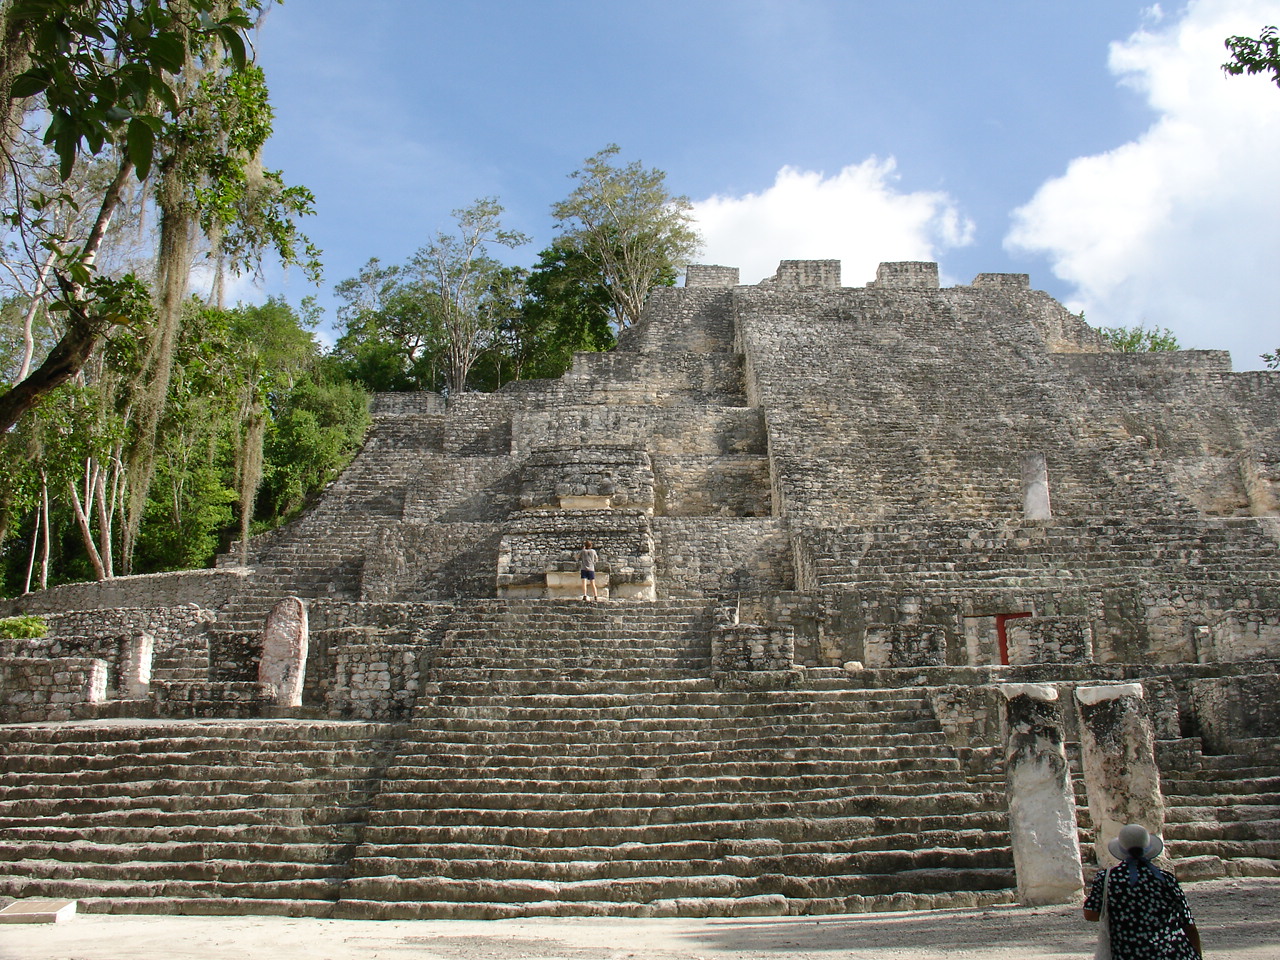 Calakmul city